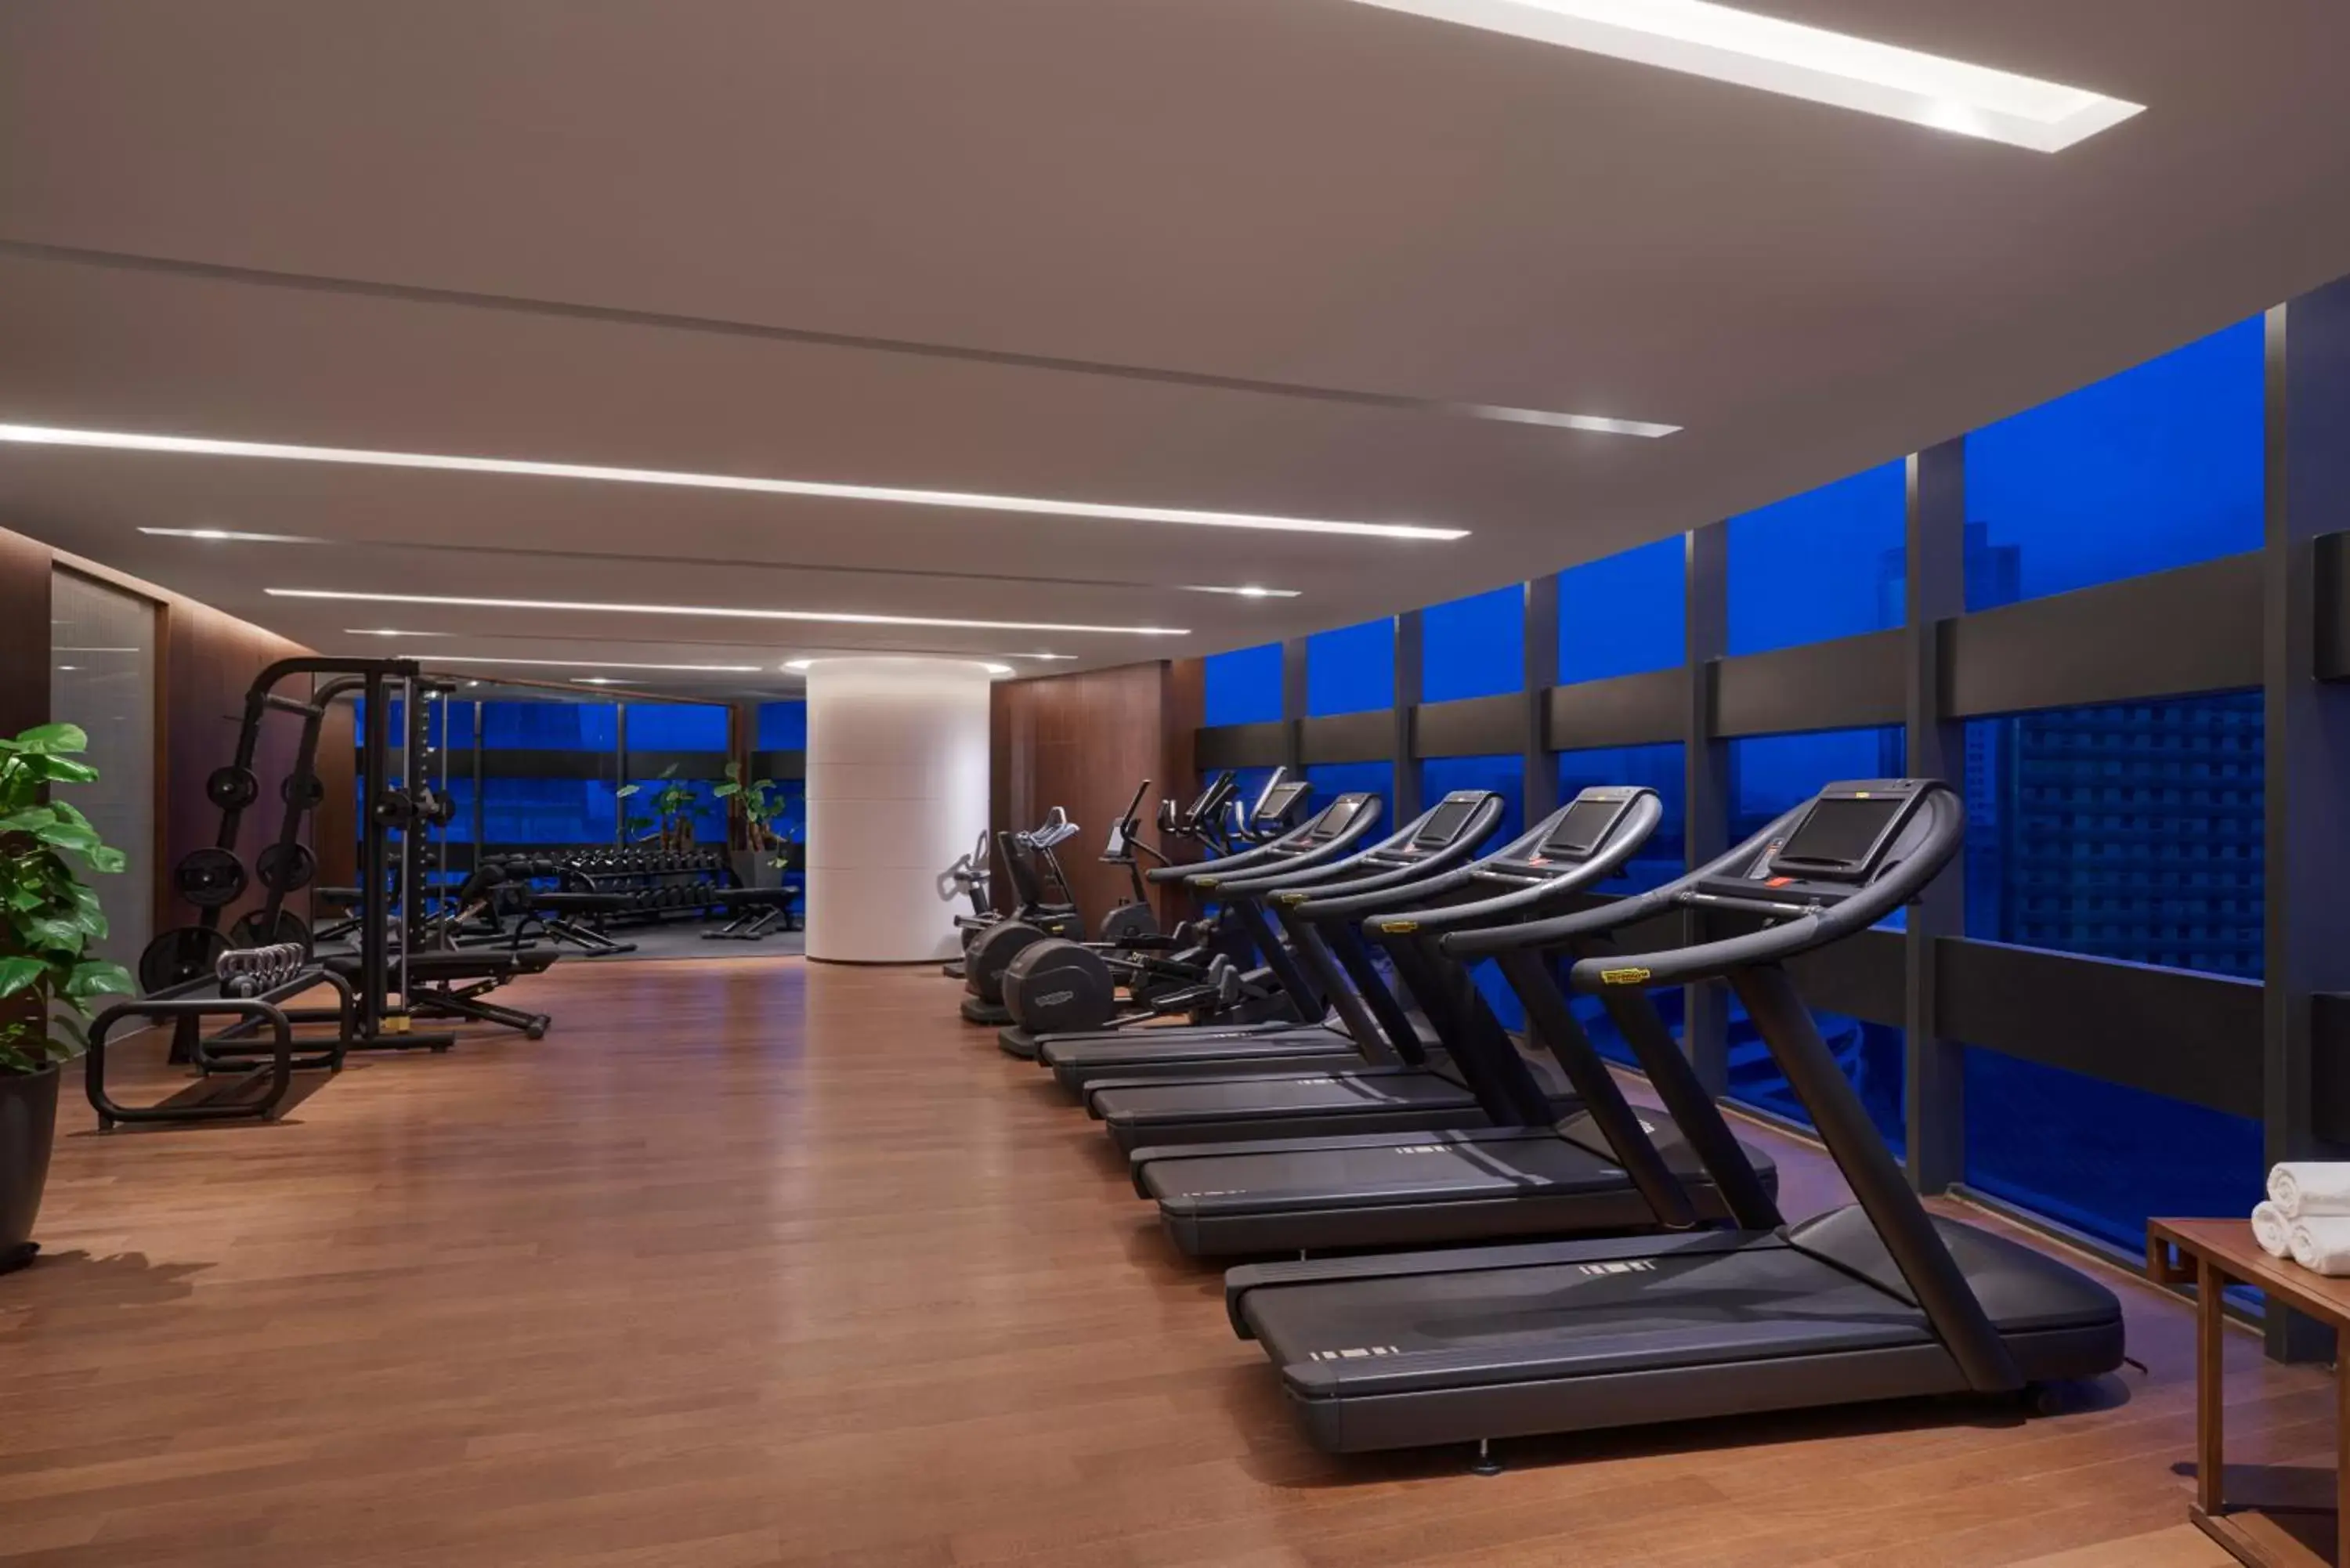 Fitness centre/facilities, Fitness Center/Facilities in Hyatt Regency Xuzhou